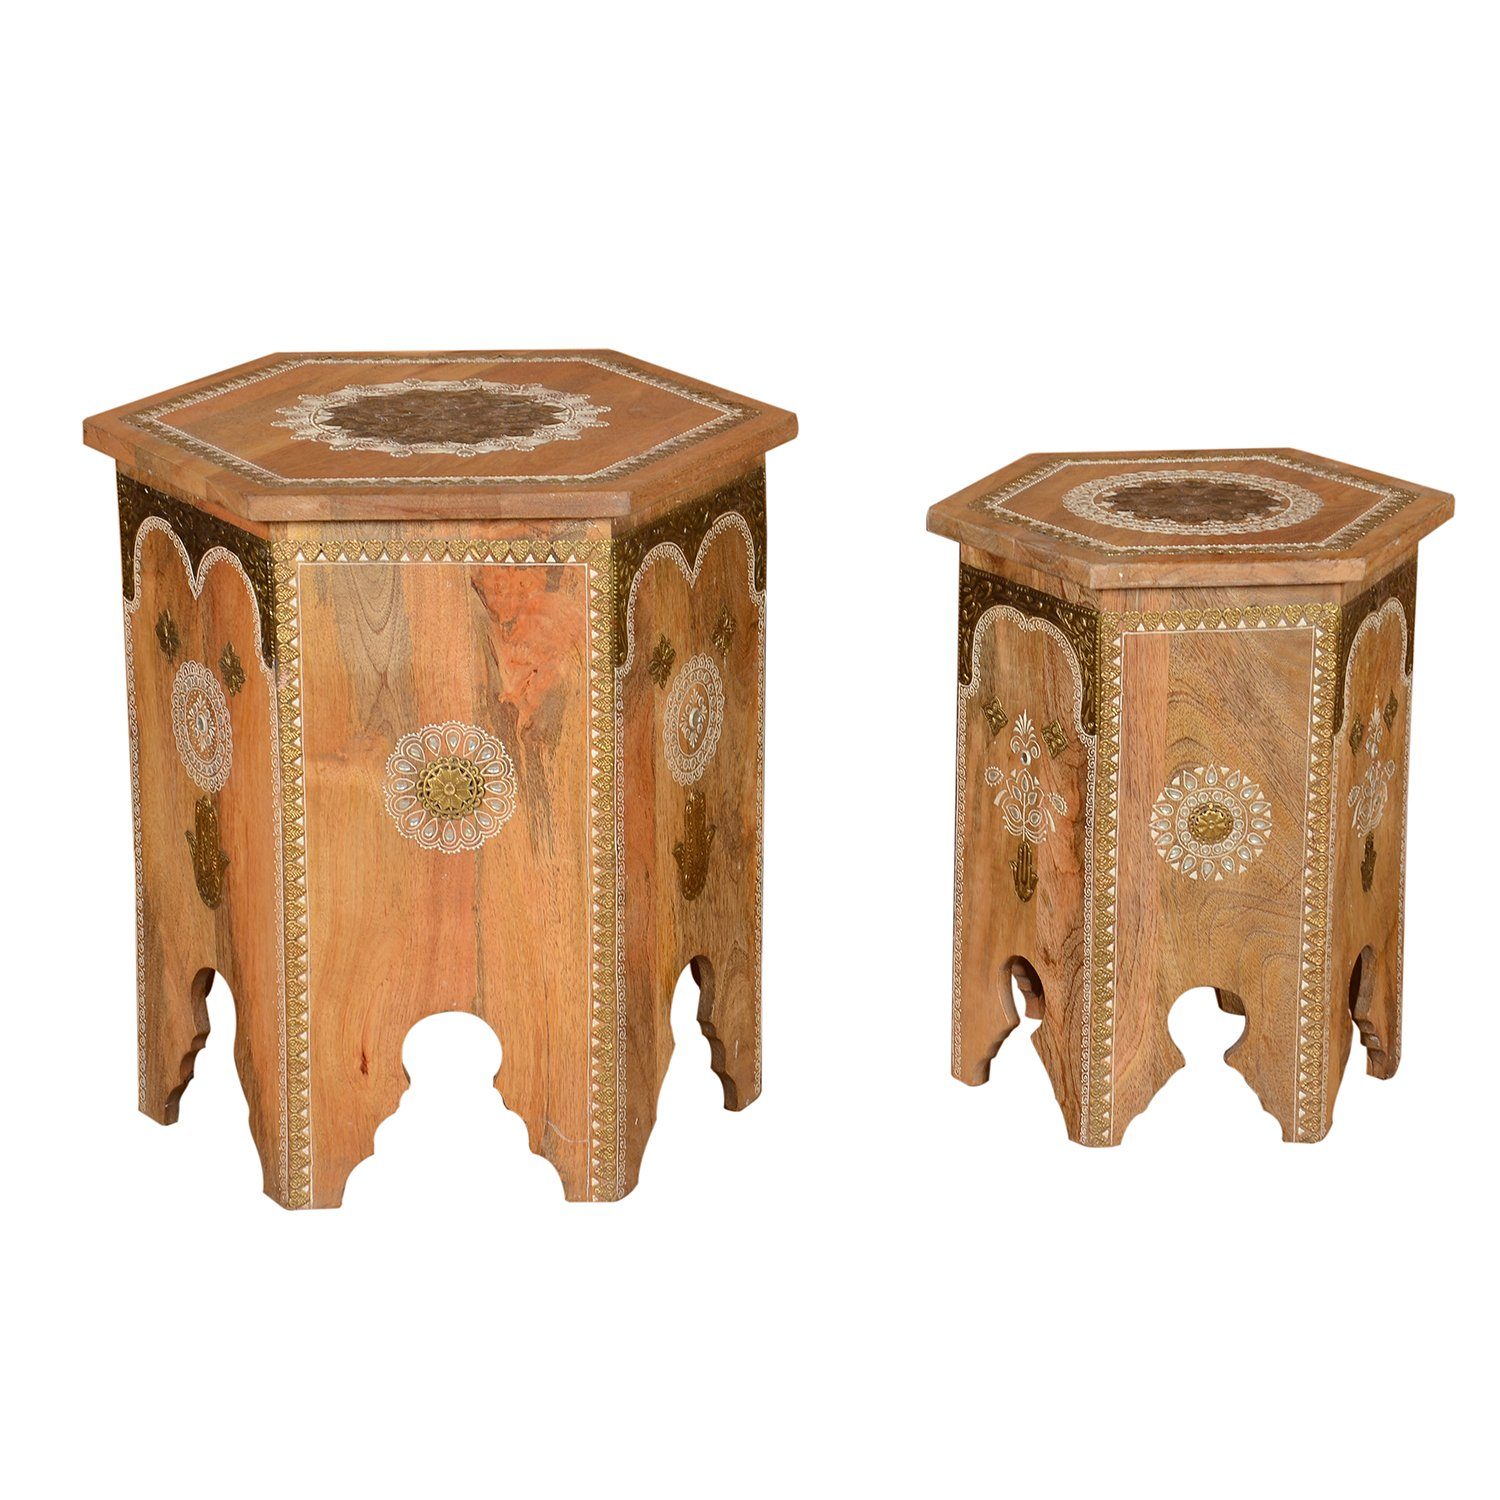 Casa Moro Beistelltisch Orientalische Beistelltische Salman aus Massivholz handverziert (Handgefertigt, 2-St., 2 er Set), Marokkanische Couchtische Teetische im Vintage Landhaus-Stil RK38-10